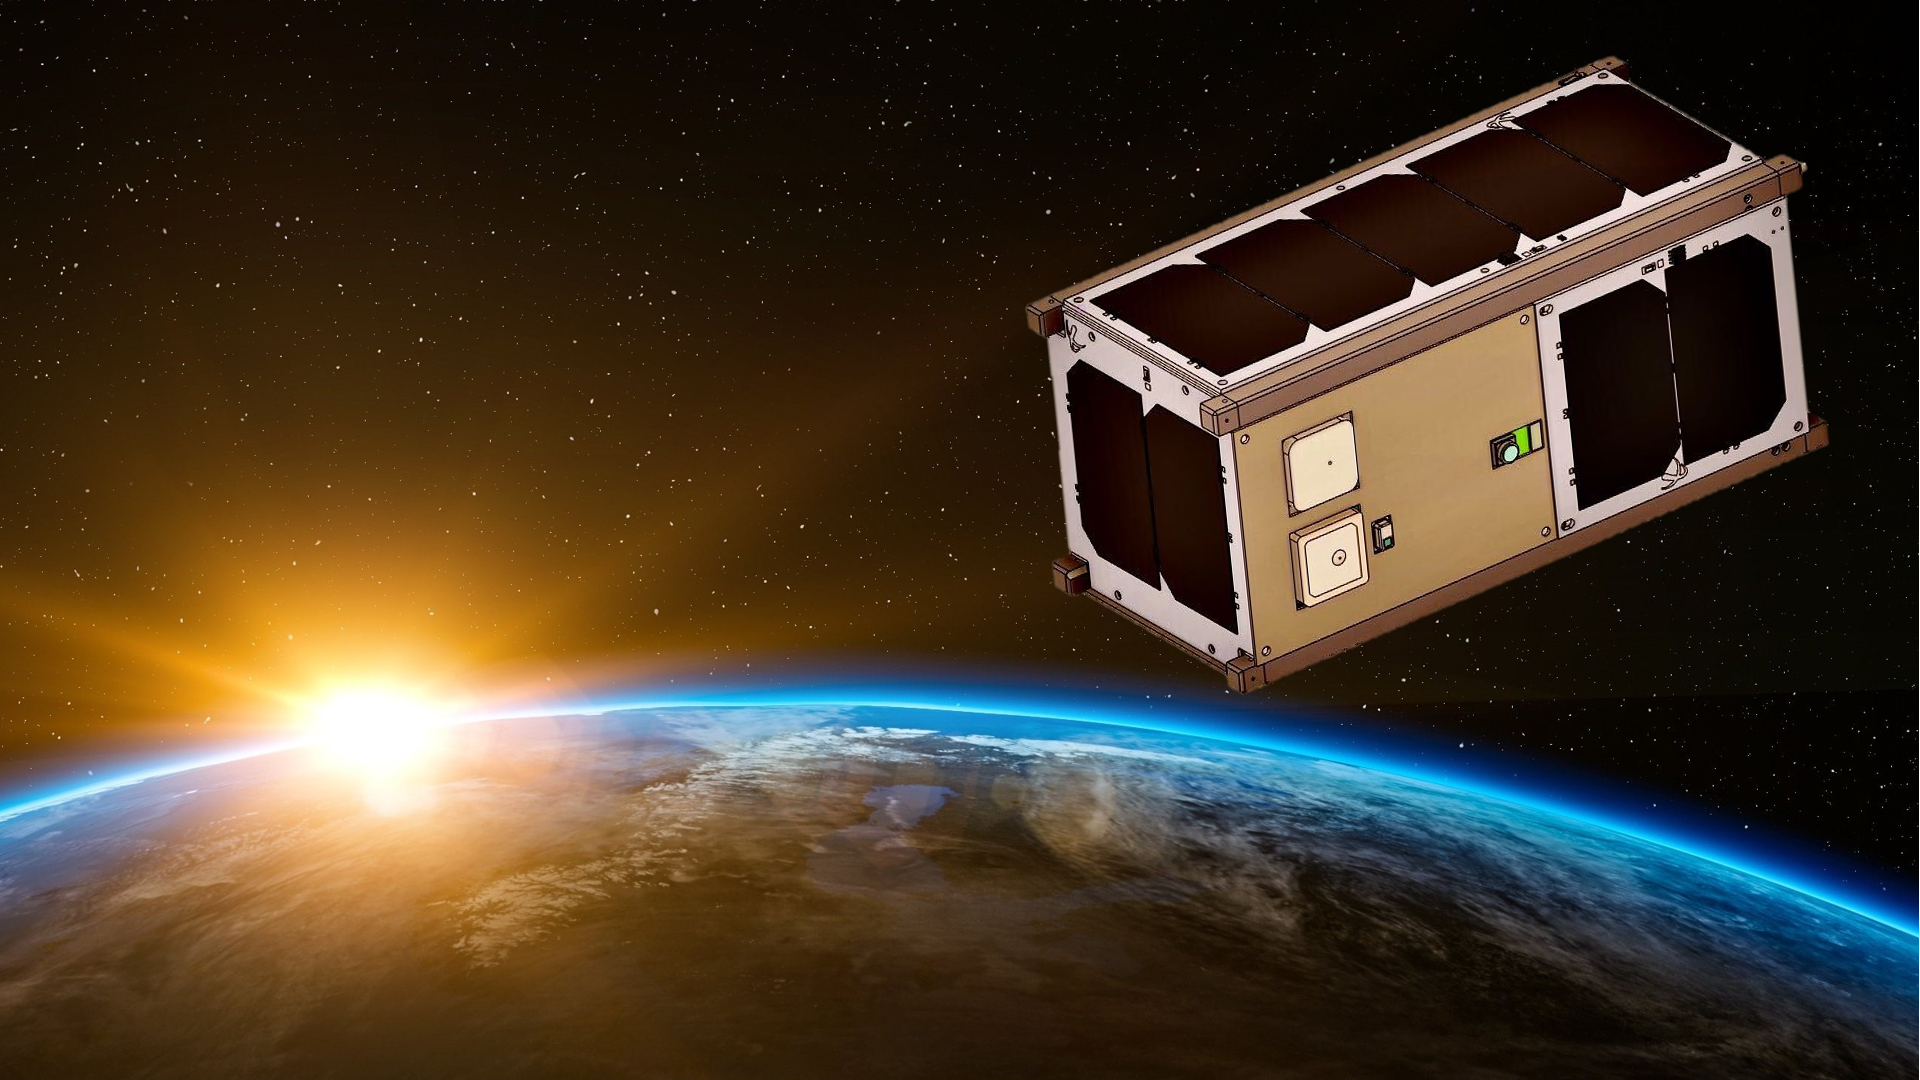 青山学院大学 総合プロジェクト研究所 超小型宇宙機研究所の速報実証衛星 ARICA-2が JAXA 輸送/超小型衛星ミッション拡充プログラムに選定